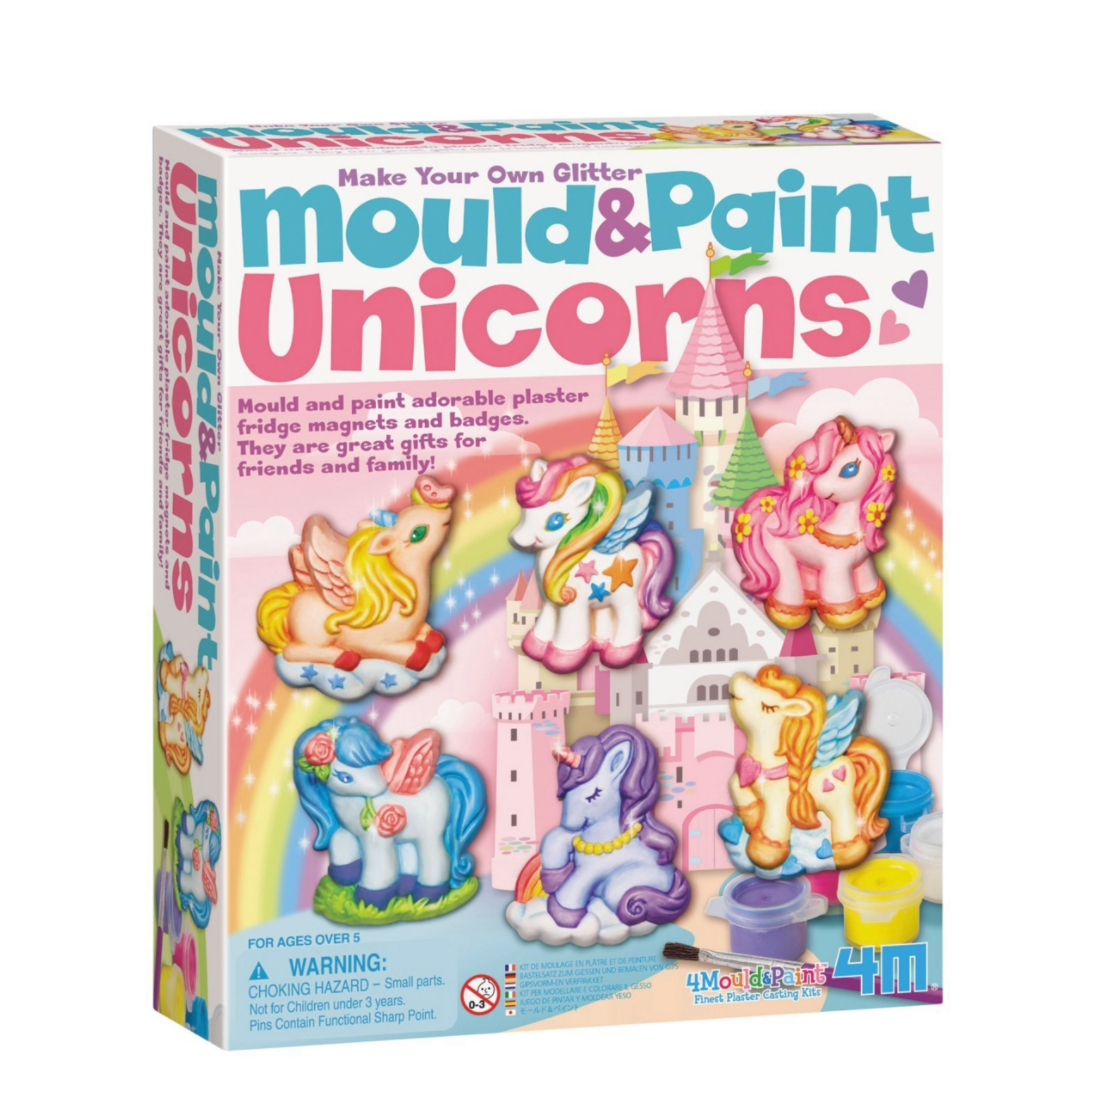 Mould & Paint Unicorns